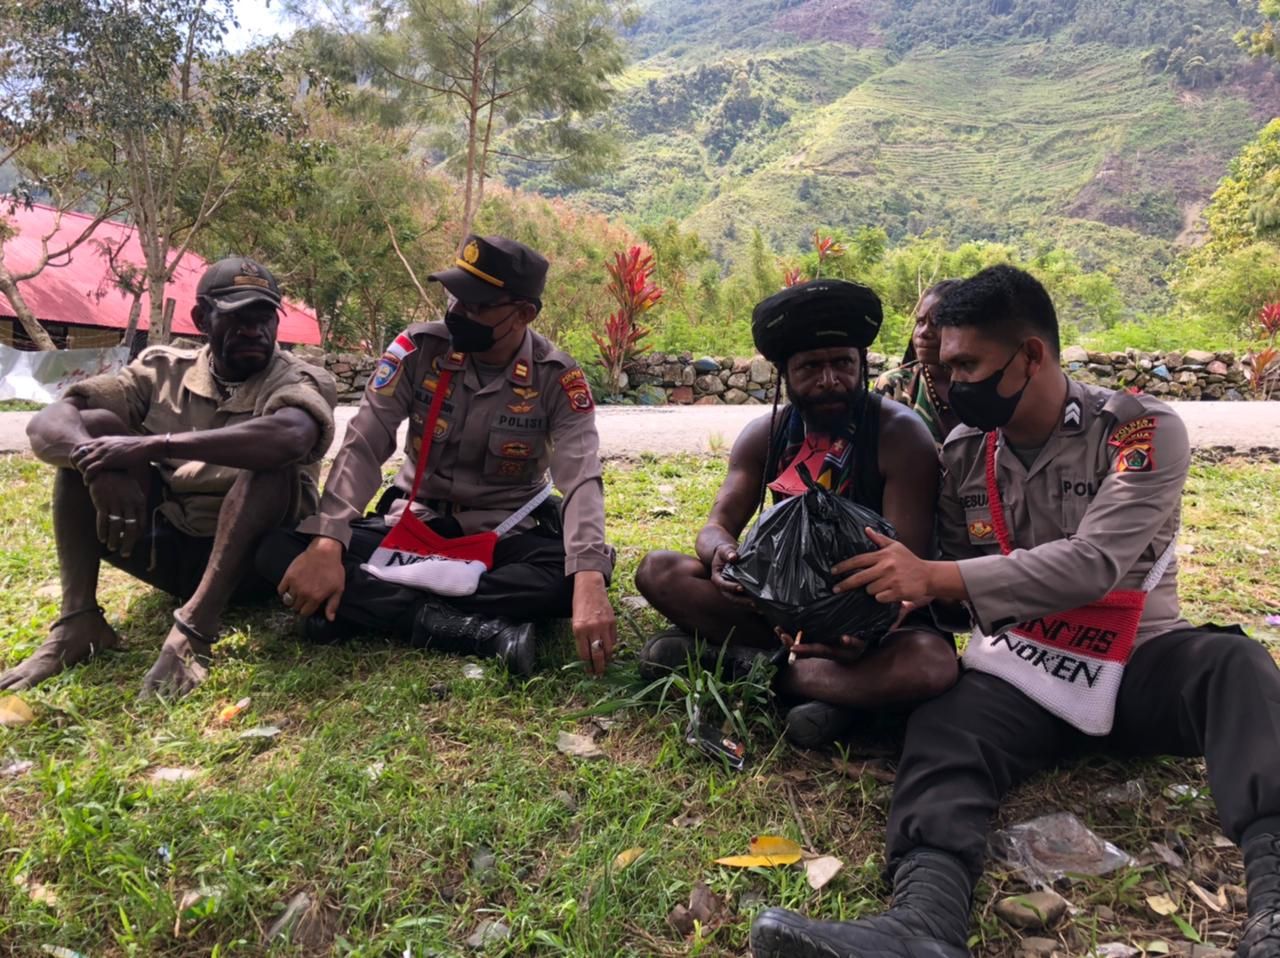 Polda Papua menggandeng eks anggota KKB untuk menjaga keamanan dan ketertiban masyarakat (kamtibmas) di Kabupaten Puncak Jaya, Papua. (dok Polda Papua)